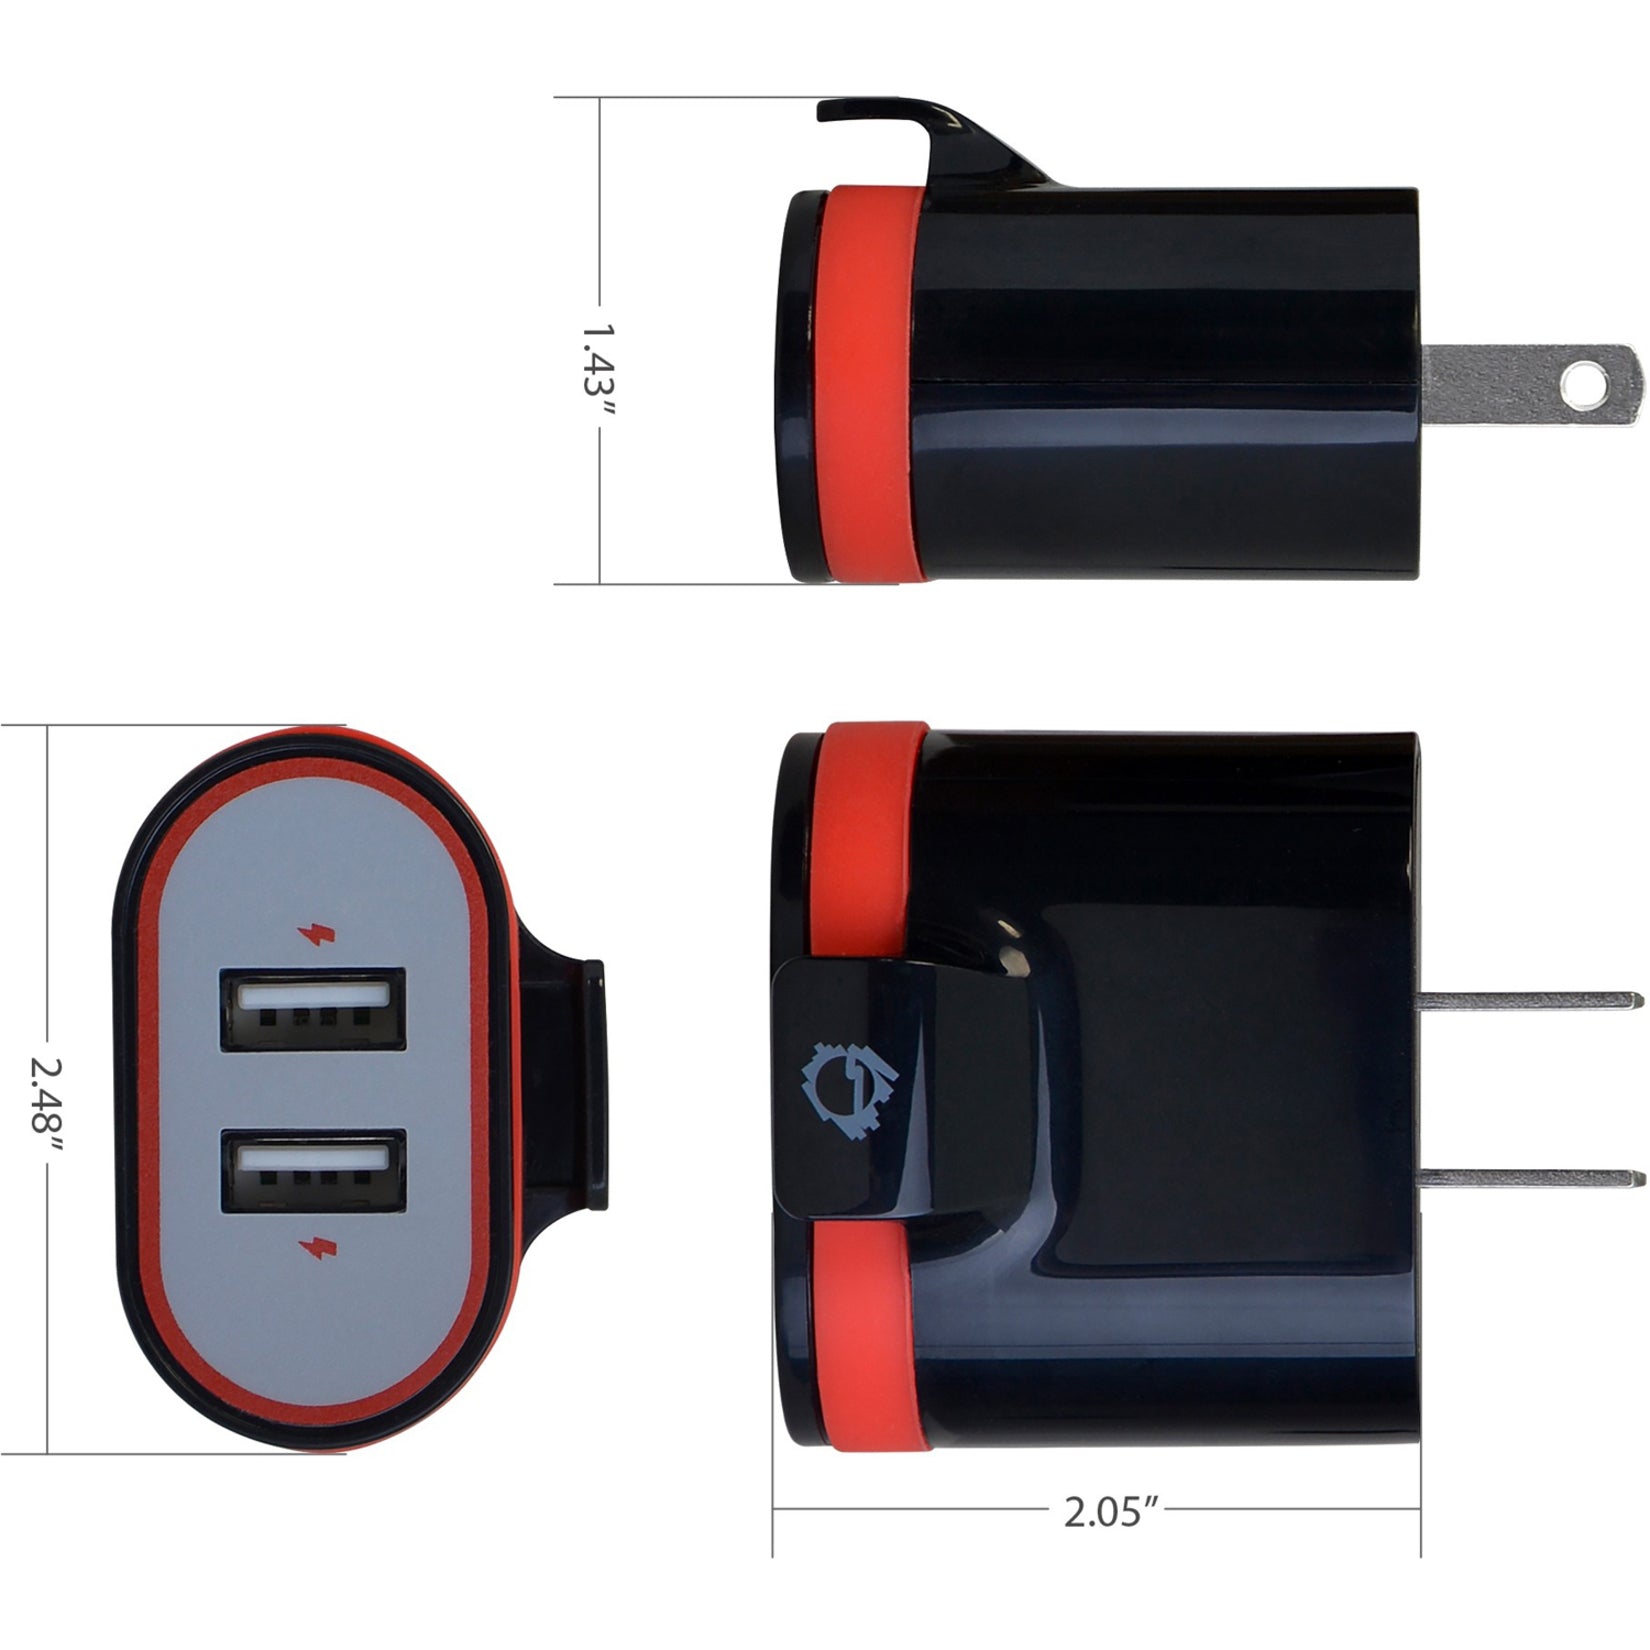 SIIG AC-PW1A12-S1 Schnellladende USB-Wandladegerät & Auto Ladegerät Bundle Pack - Schwarz 34A Ausgang 1 Jahr Garantie